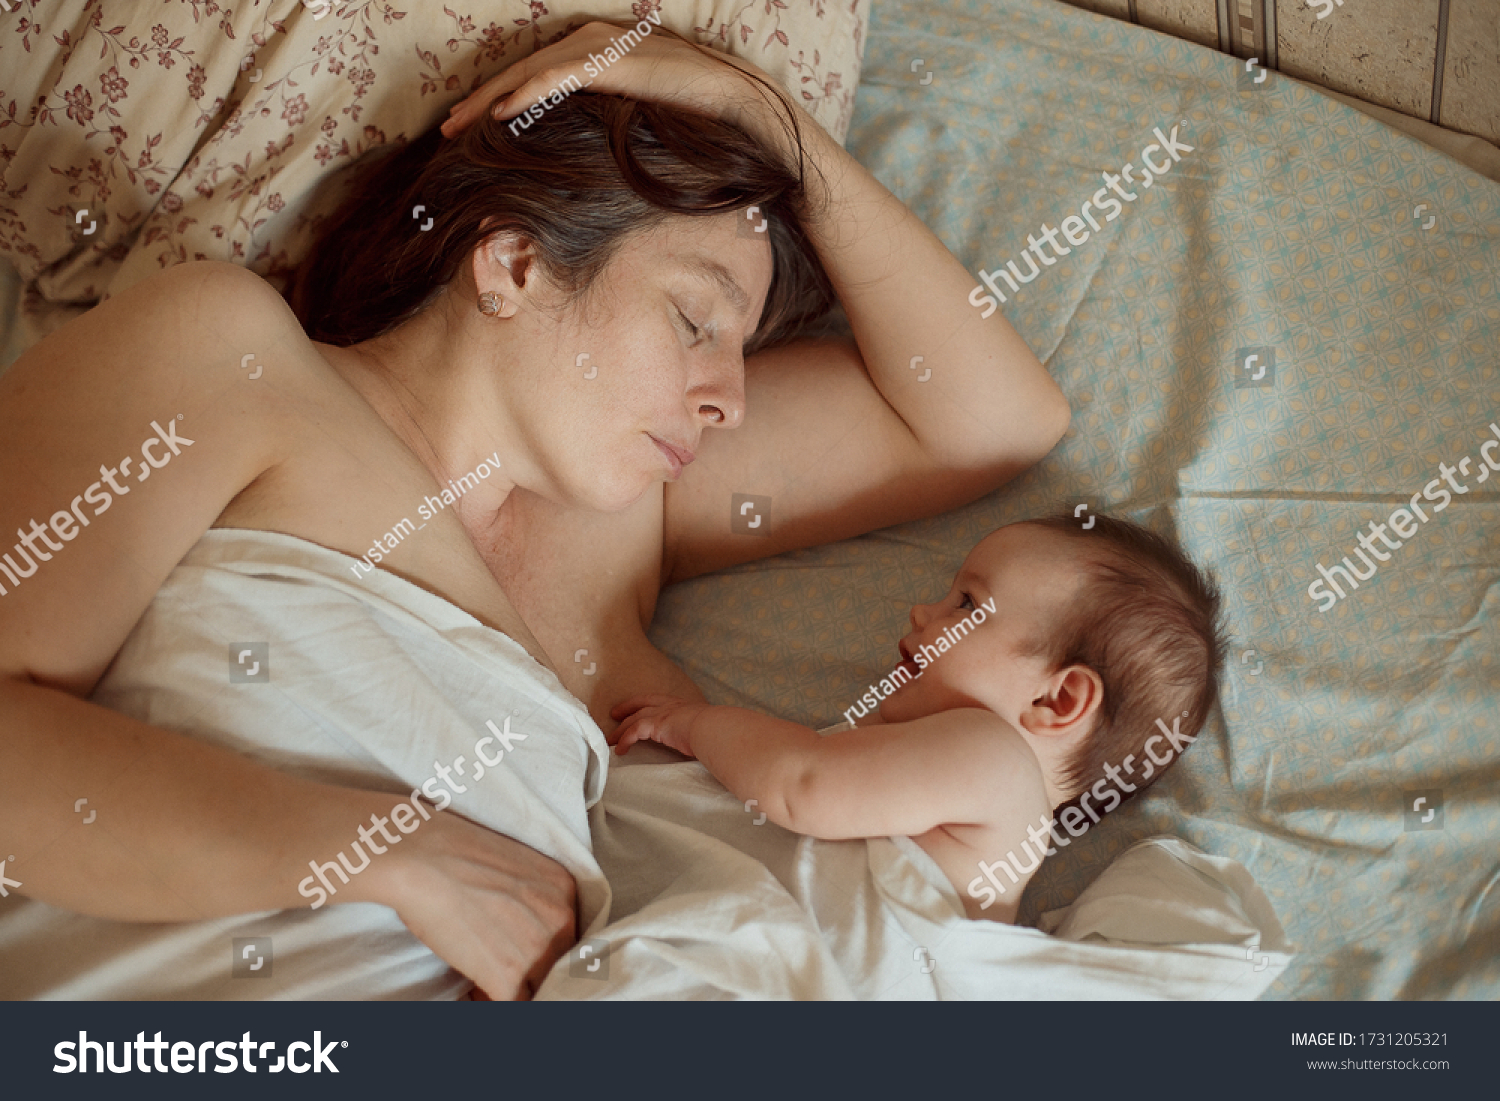 на фото голая мама и ребенок фото 92